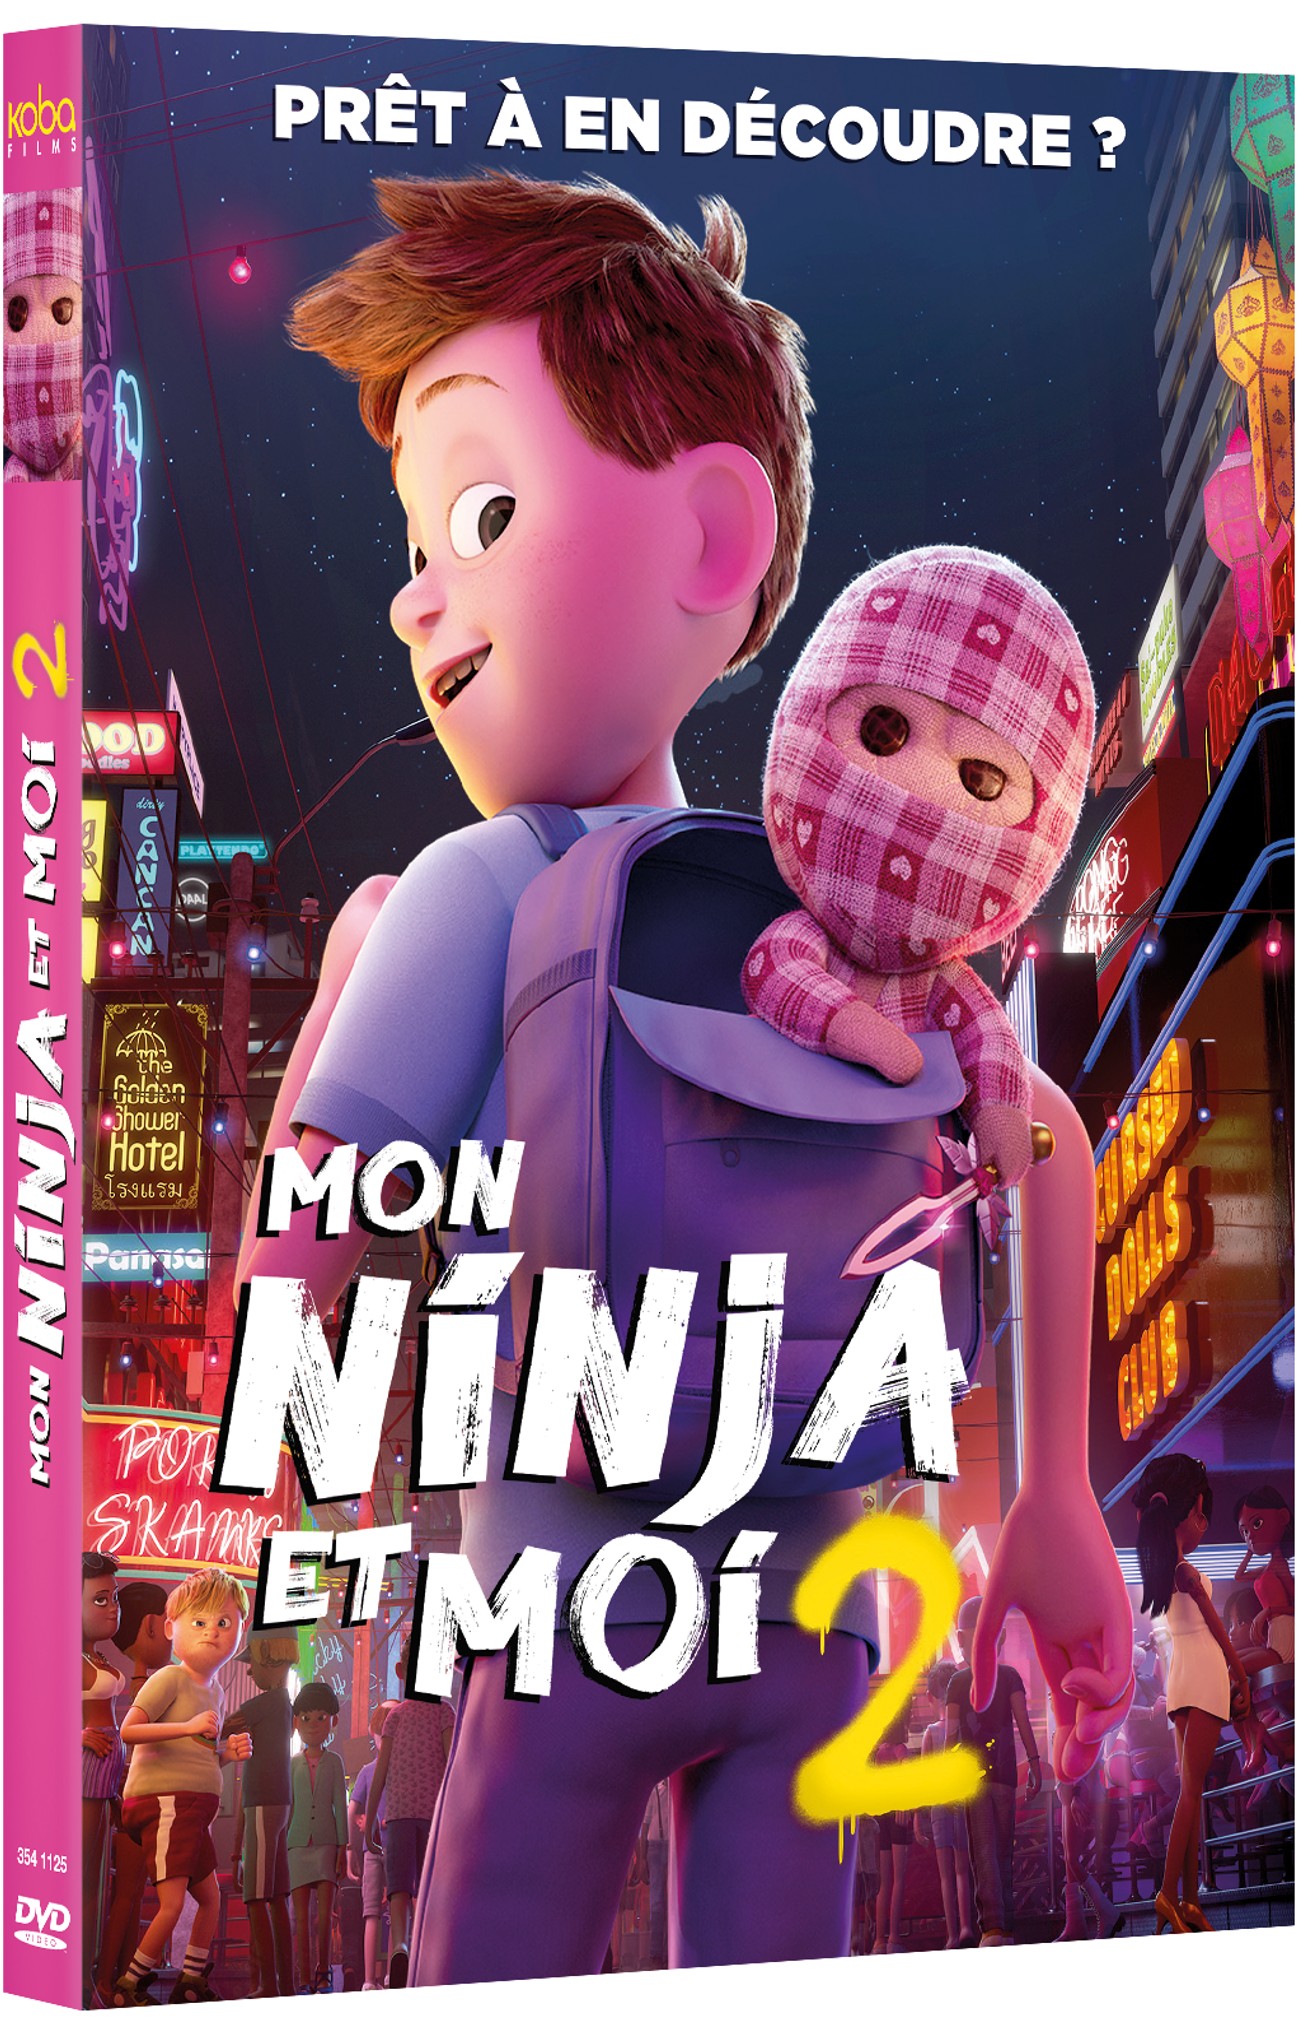 MON NINJA ET MOI 2 - DVD